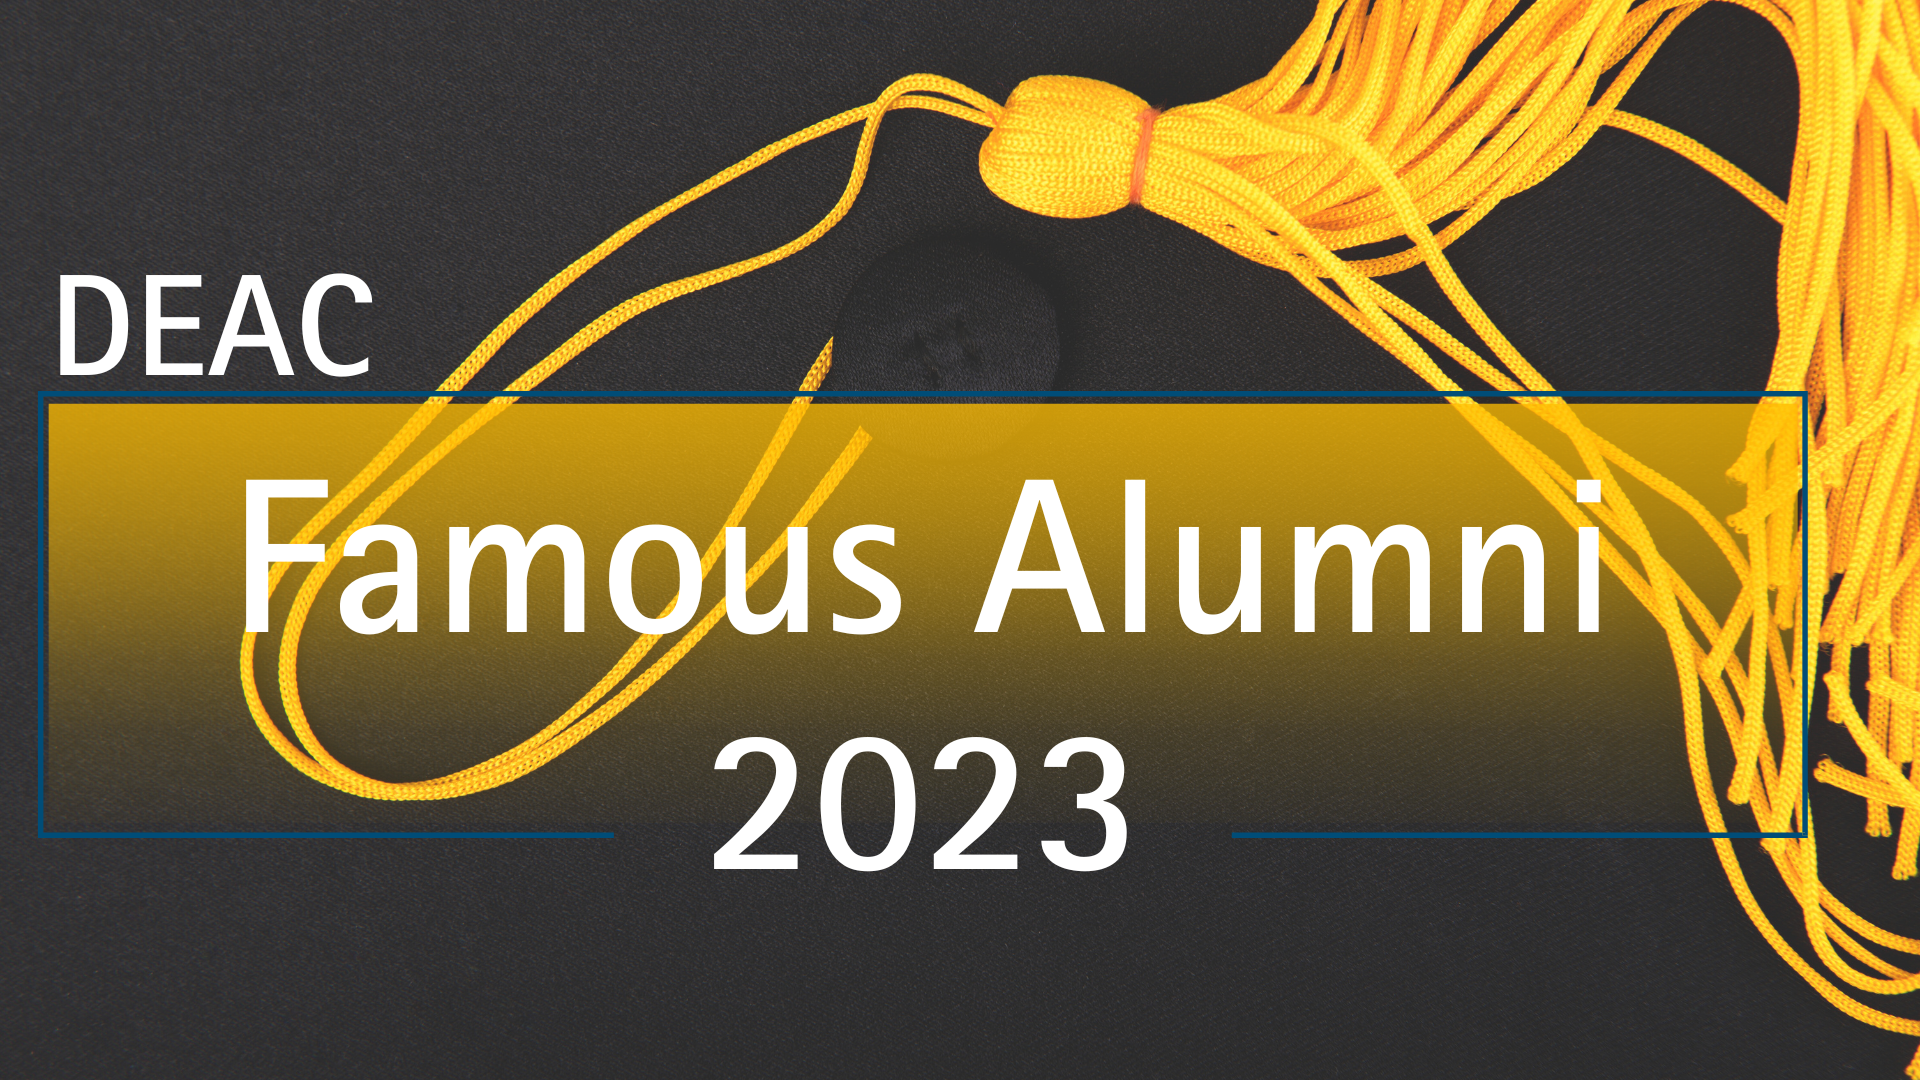 DEAC Famous Alumni  1920 x 1080 Blog Header 